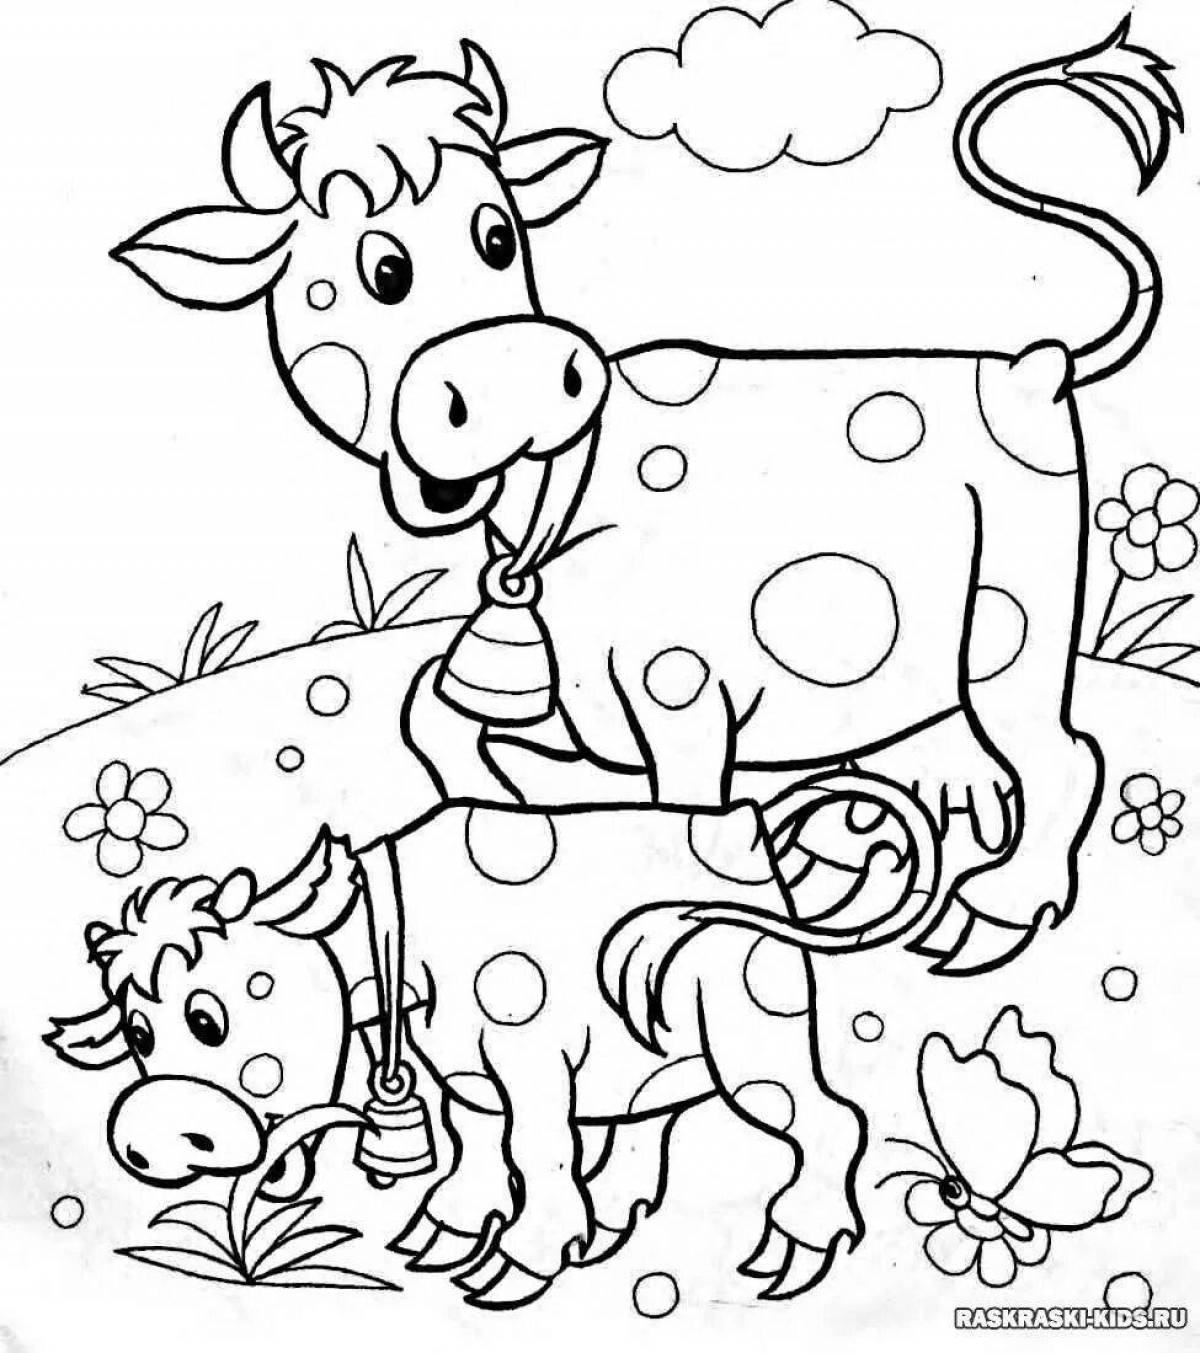 Раскраска сладкий теленок для детей